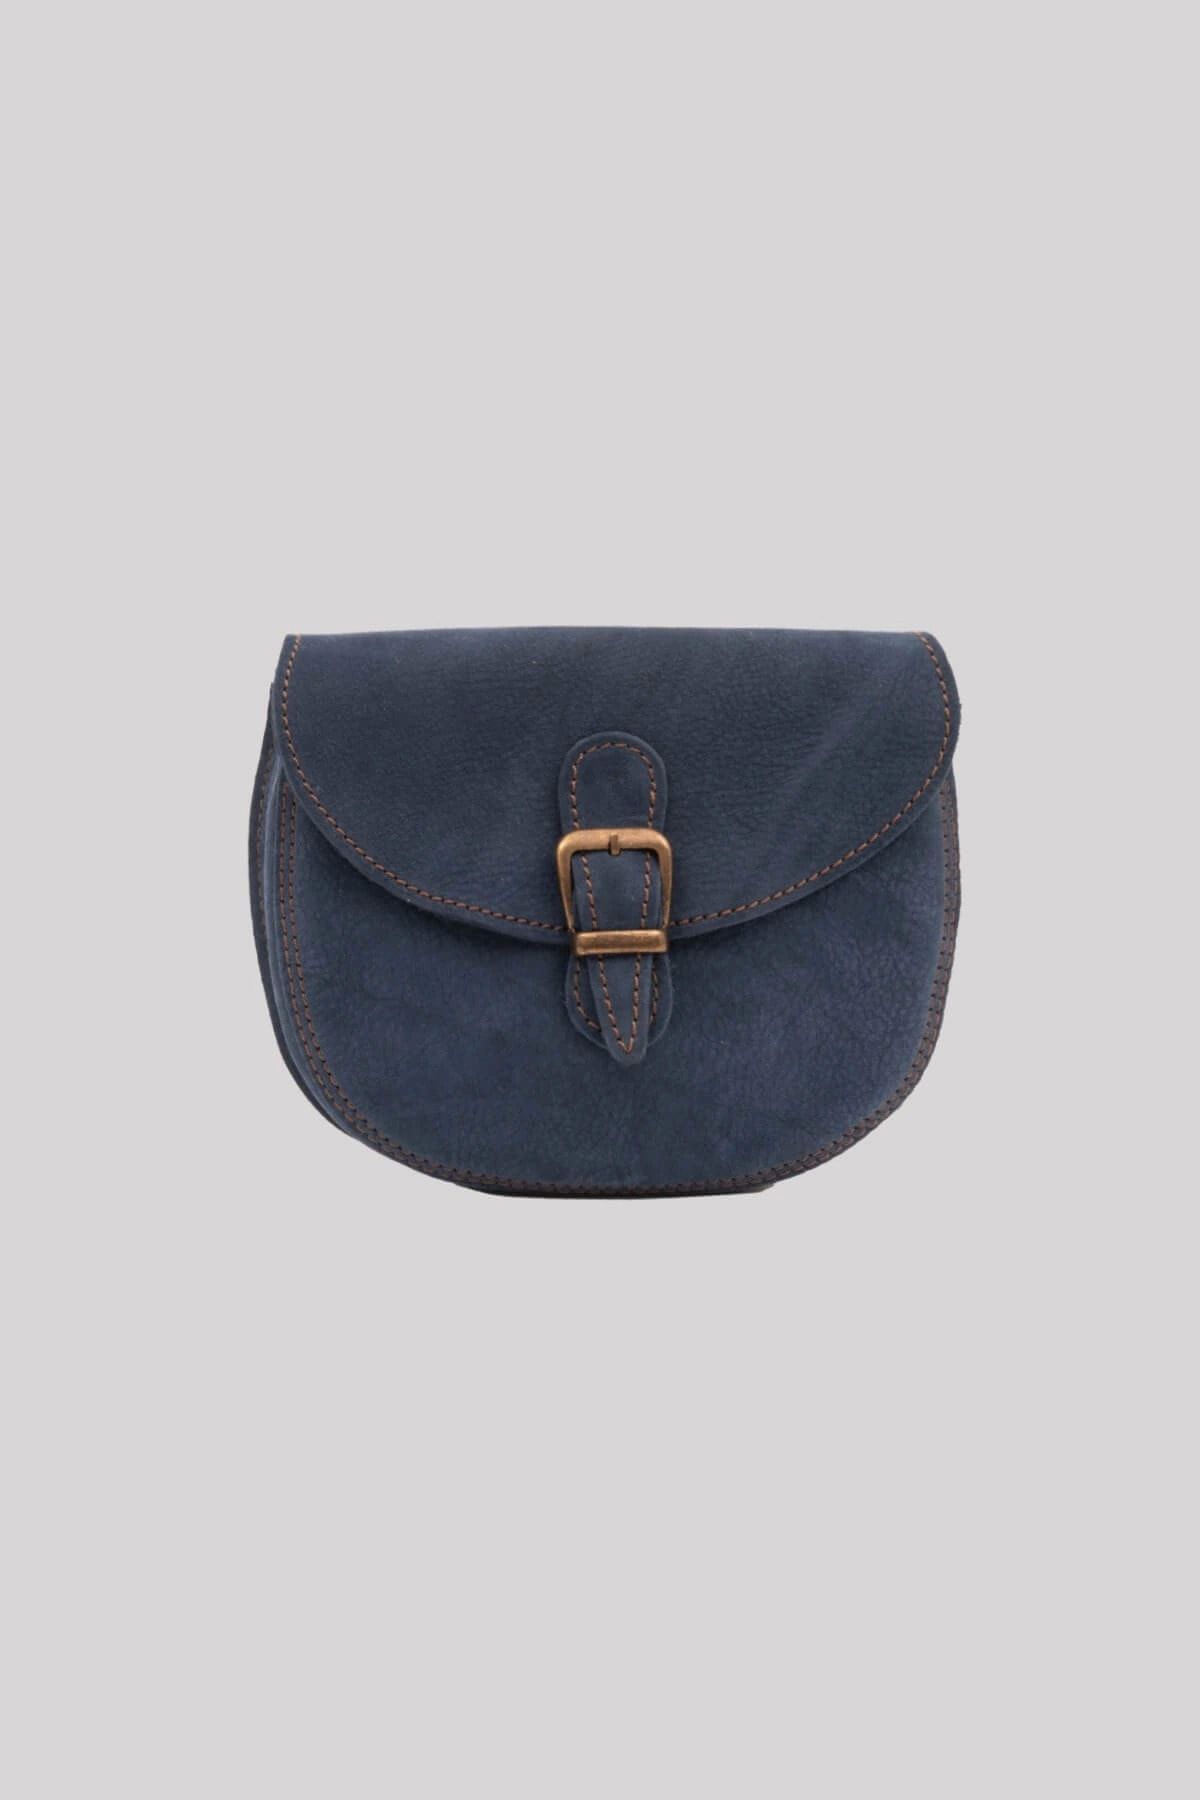 Galata Leather El Yapımı Kadın Deri Postacı Çantası - Sevılla - Mavı